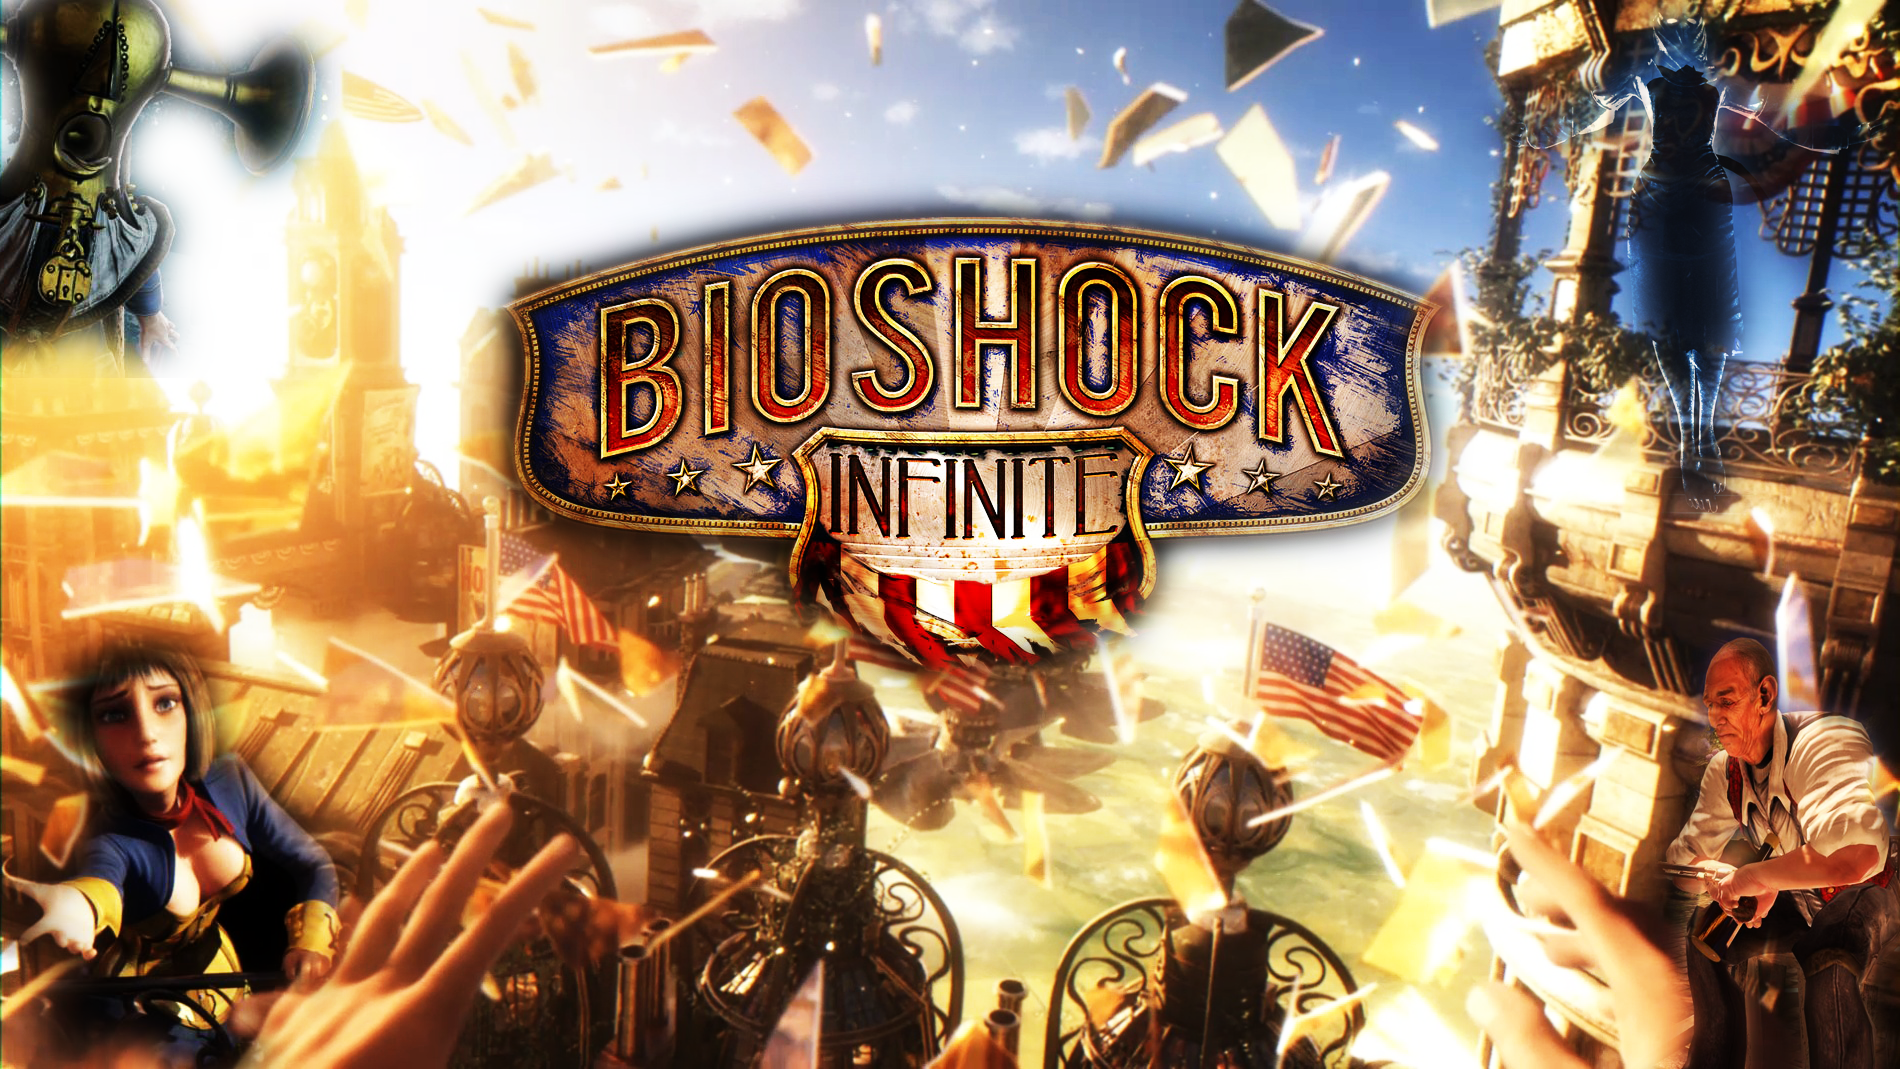 Bioshock Infinite